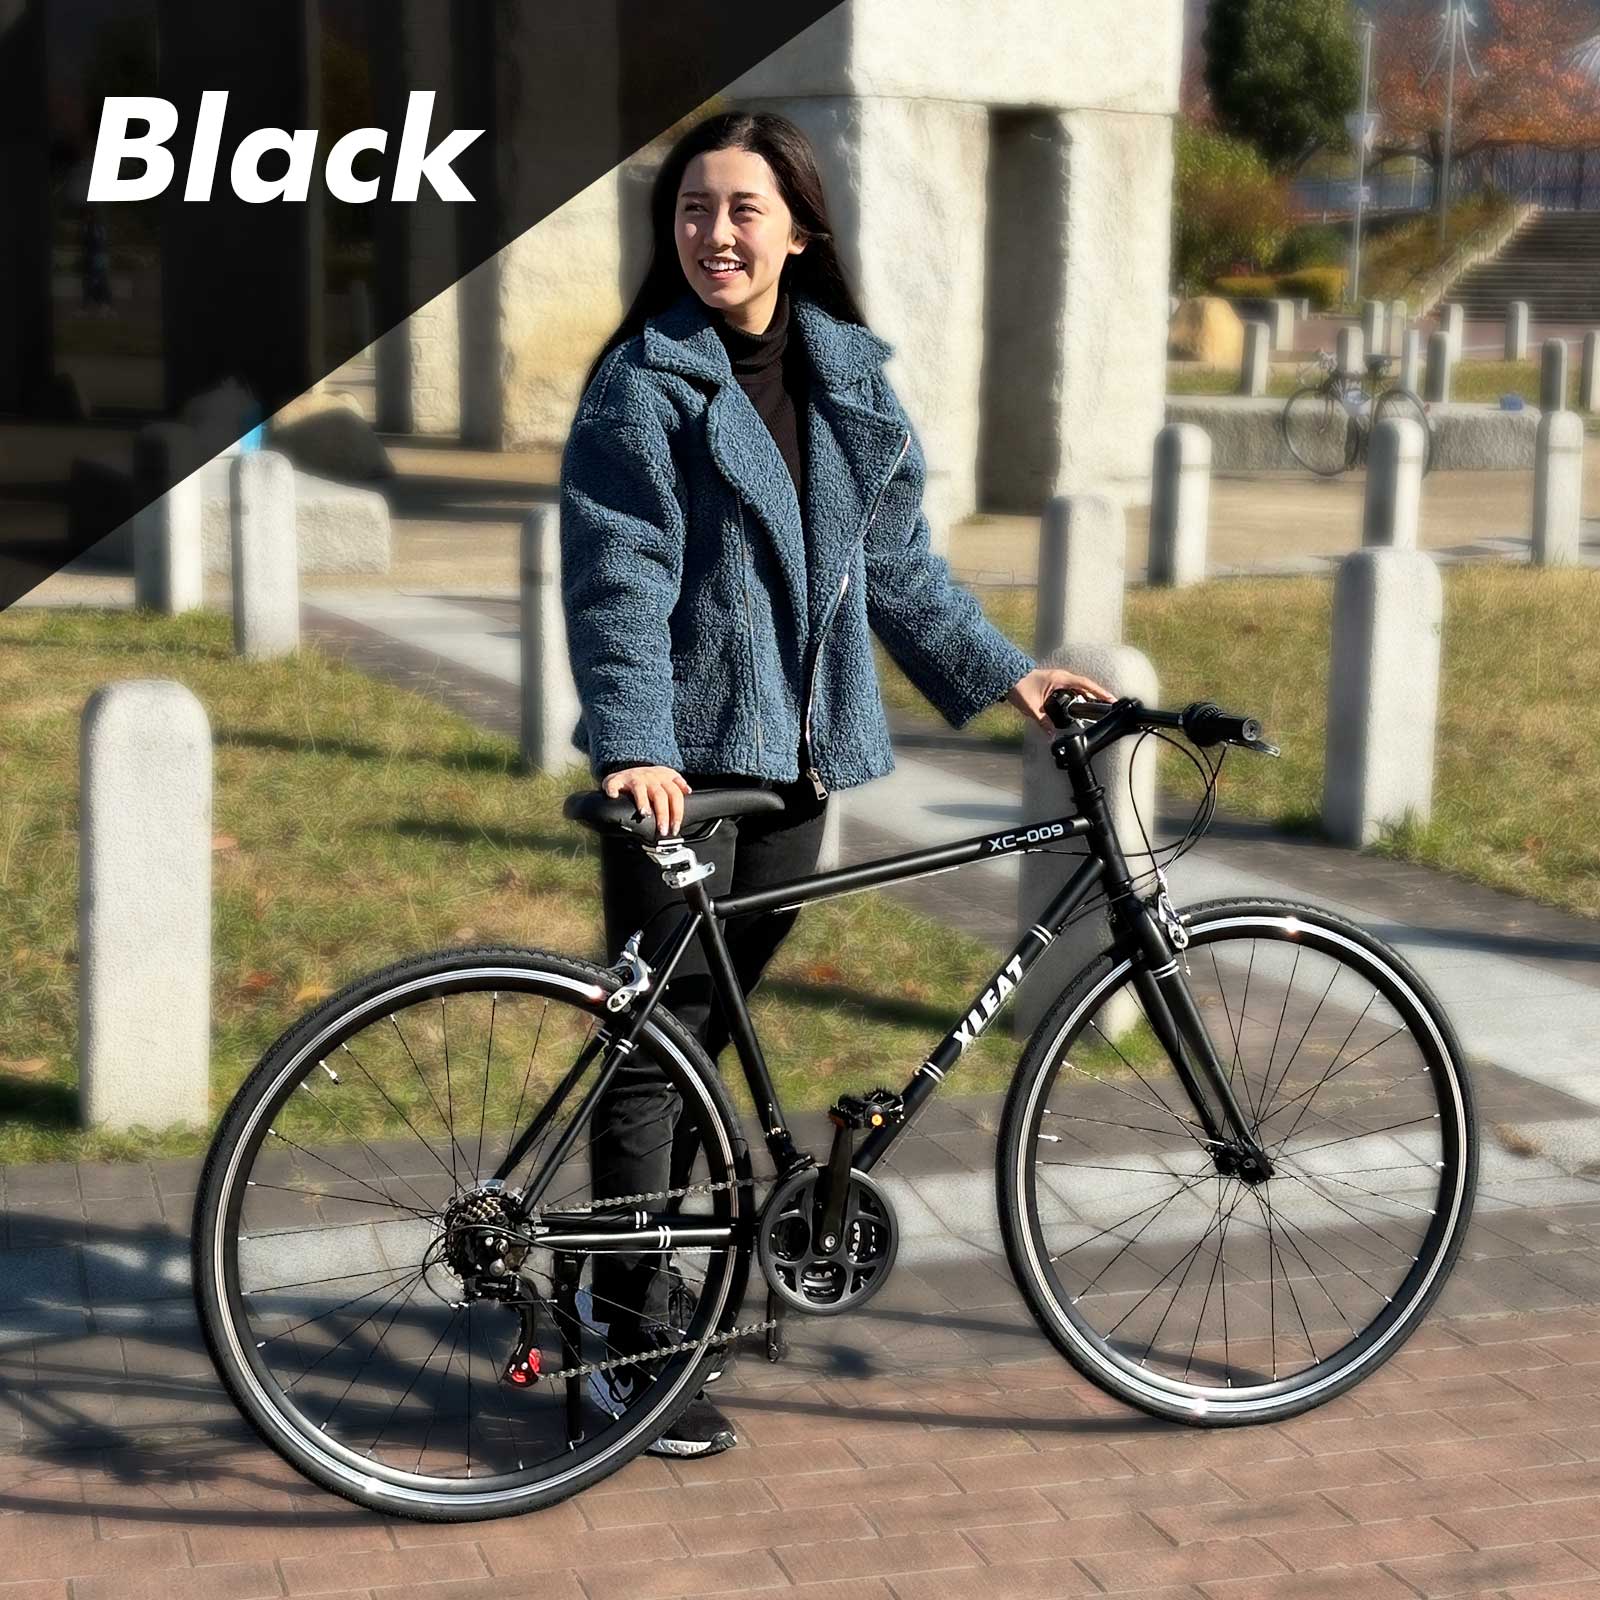 クロスバイク 700c シマノ製 21段変速 ライト スタンド付 自転車 通勤 通学 初心者 女性